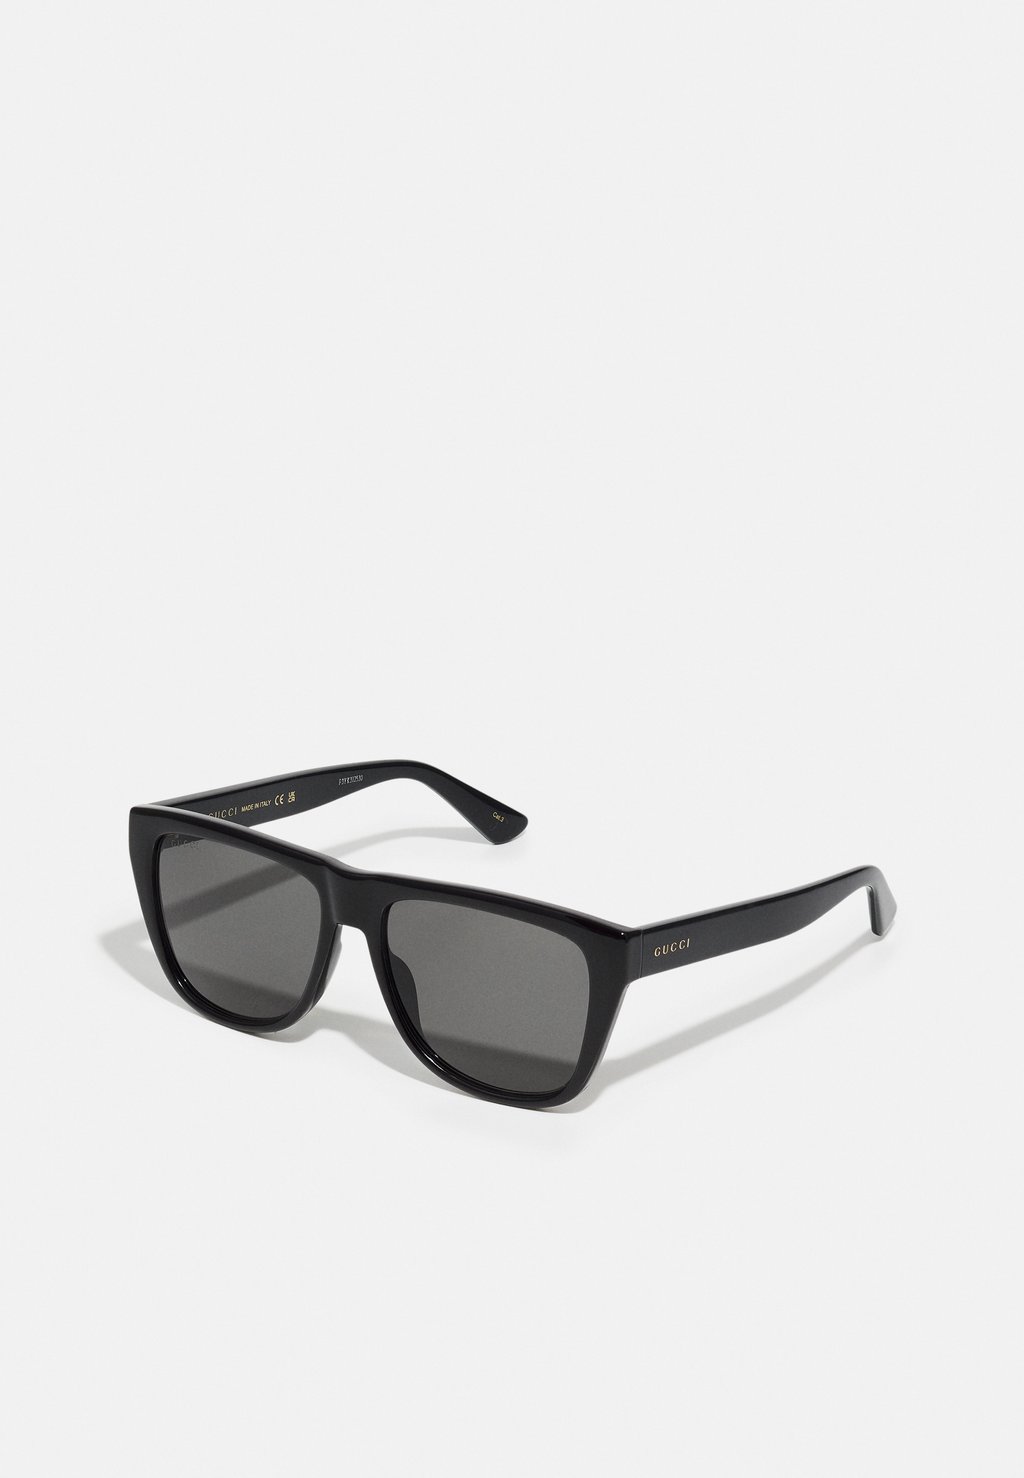 Солнцезащитные очки Unisex Gucci, цвет black/smoke